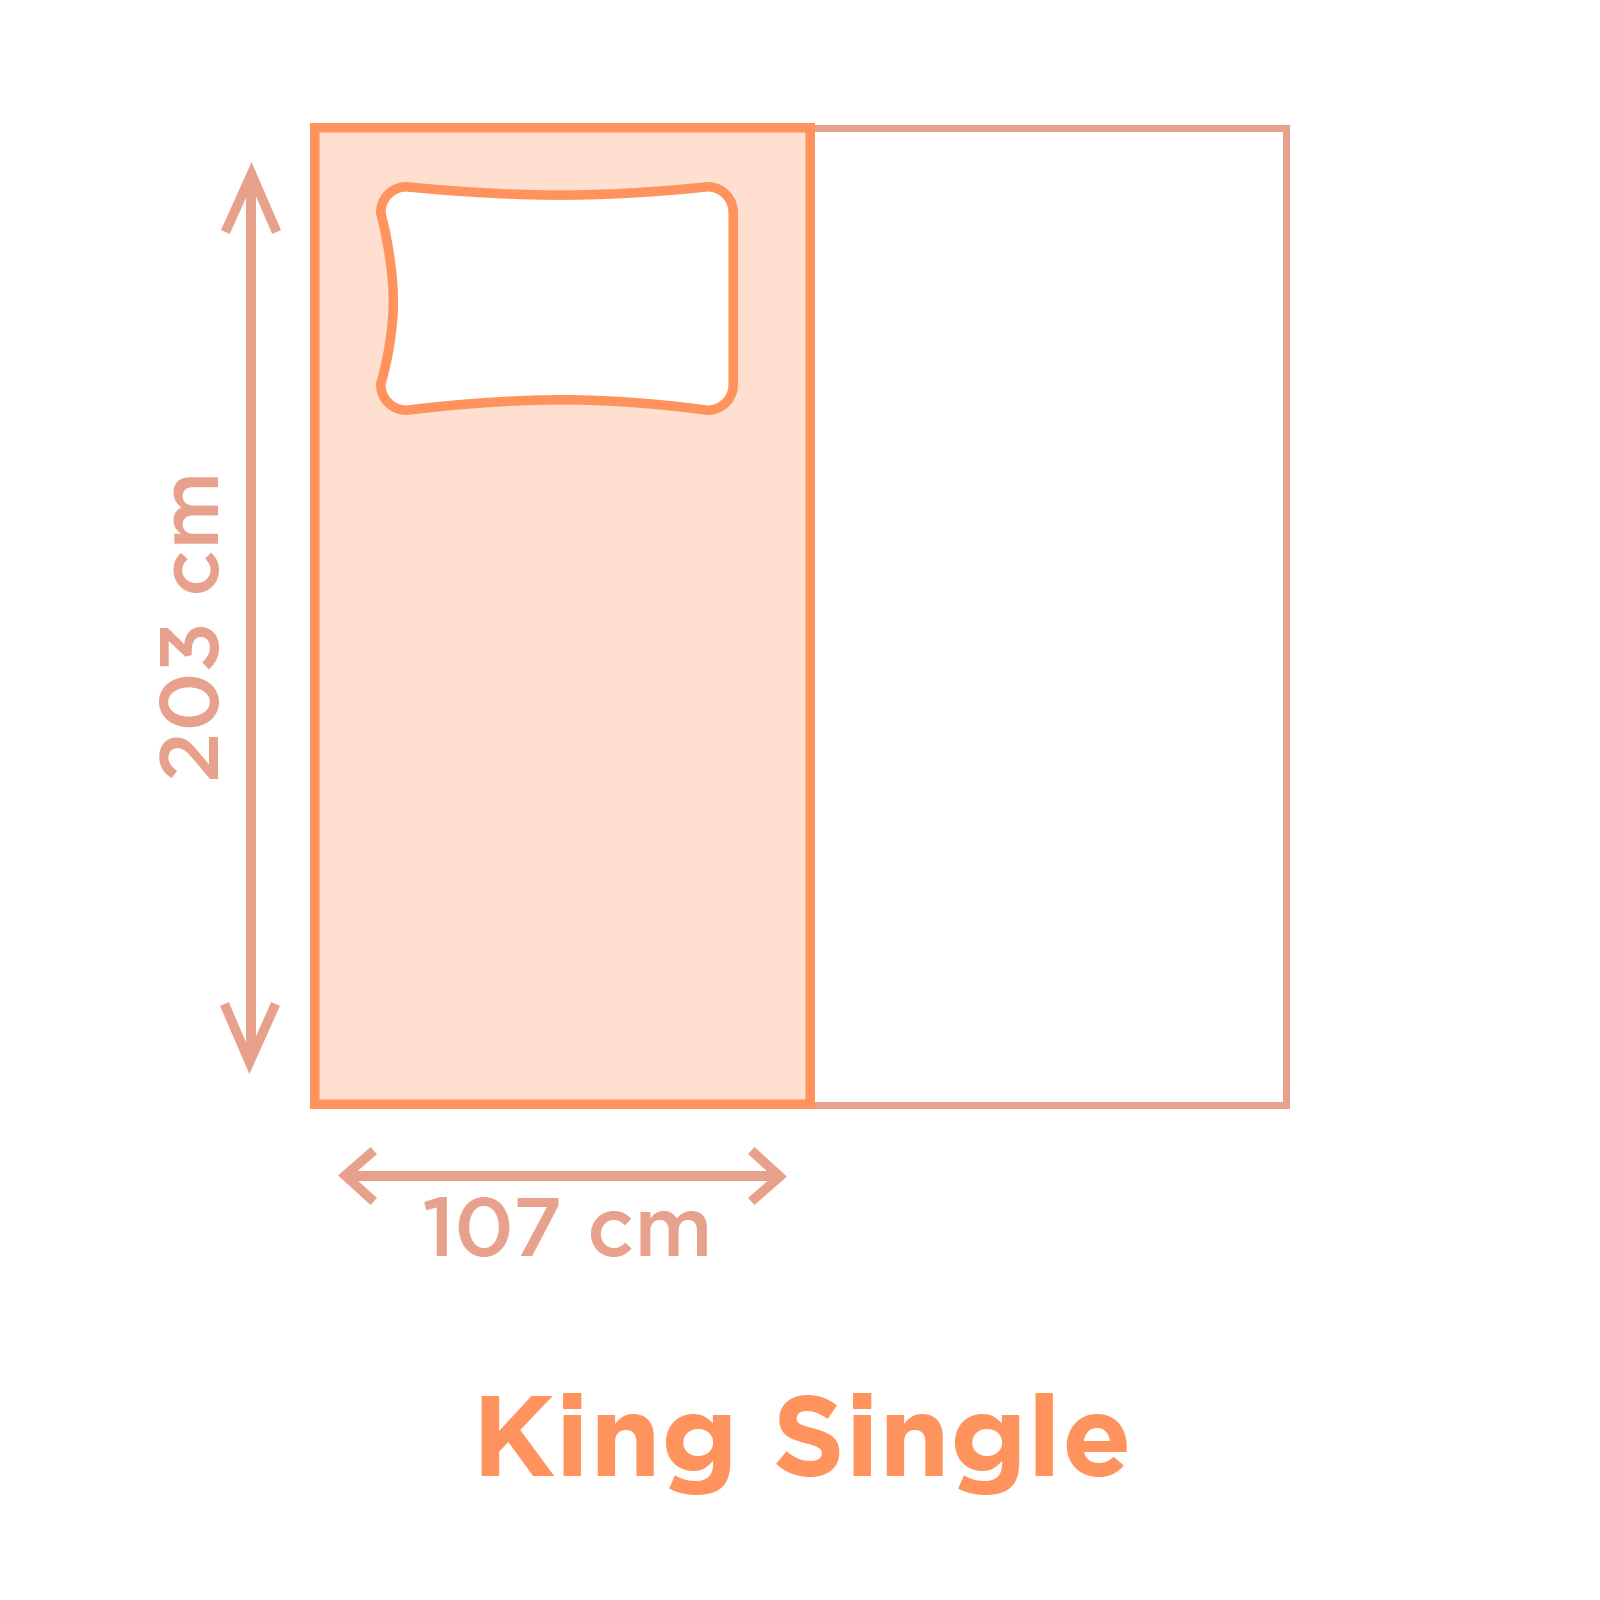 King Single Size Mattress